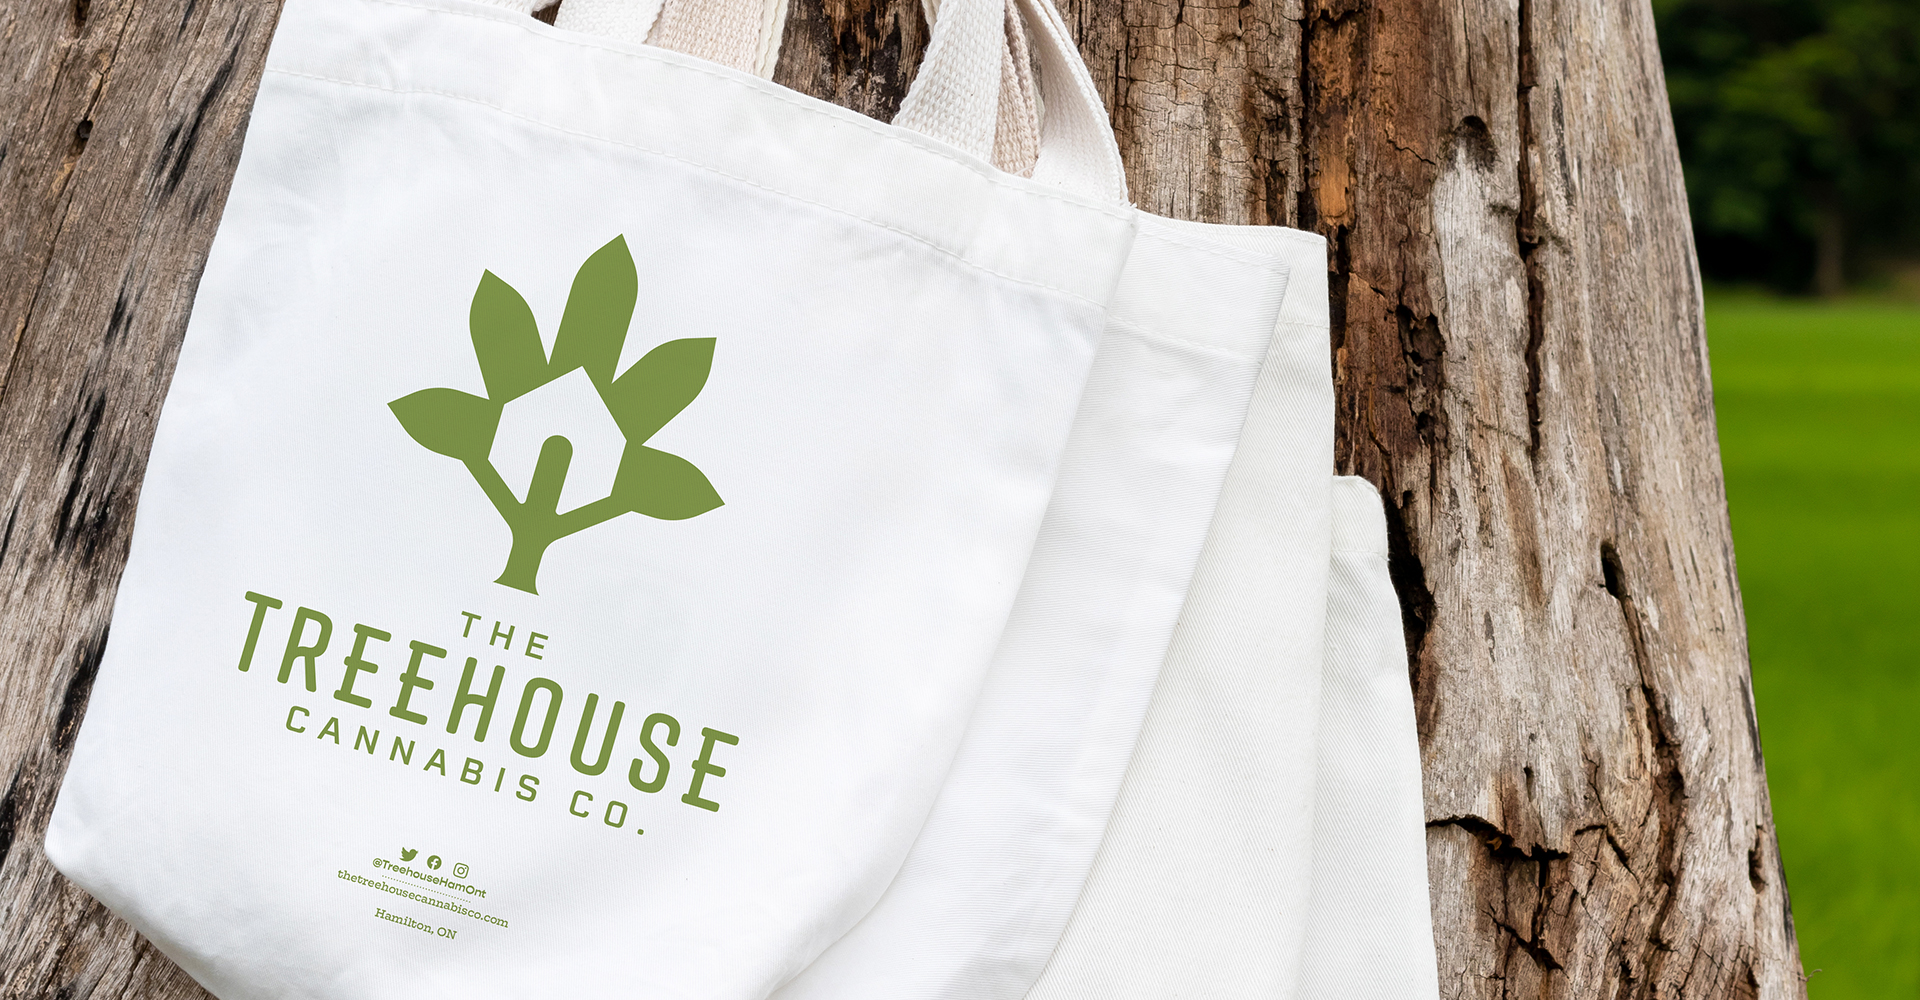 The Treehouse Cannabis Co.